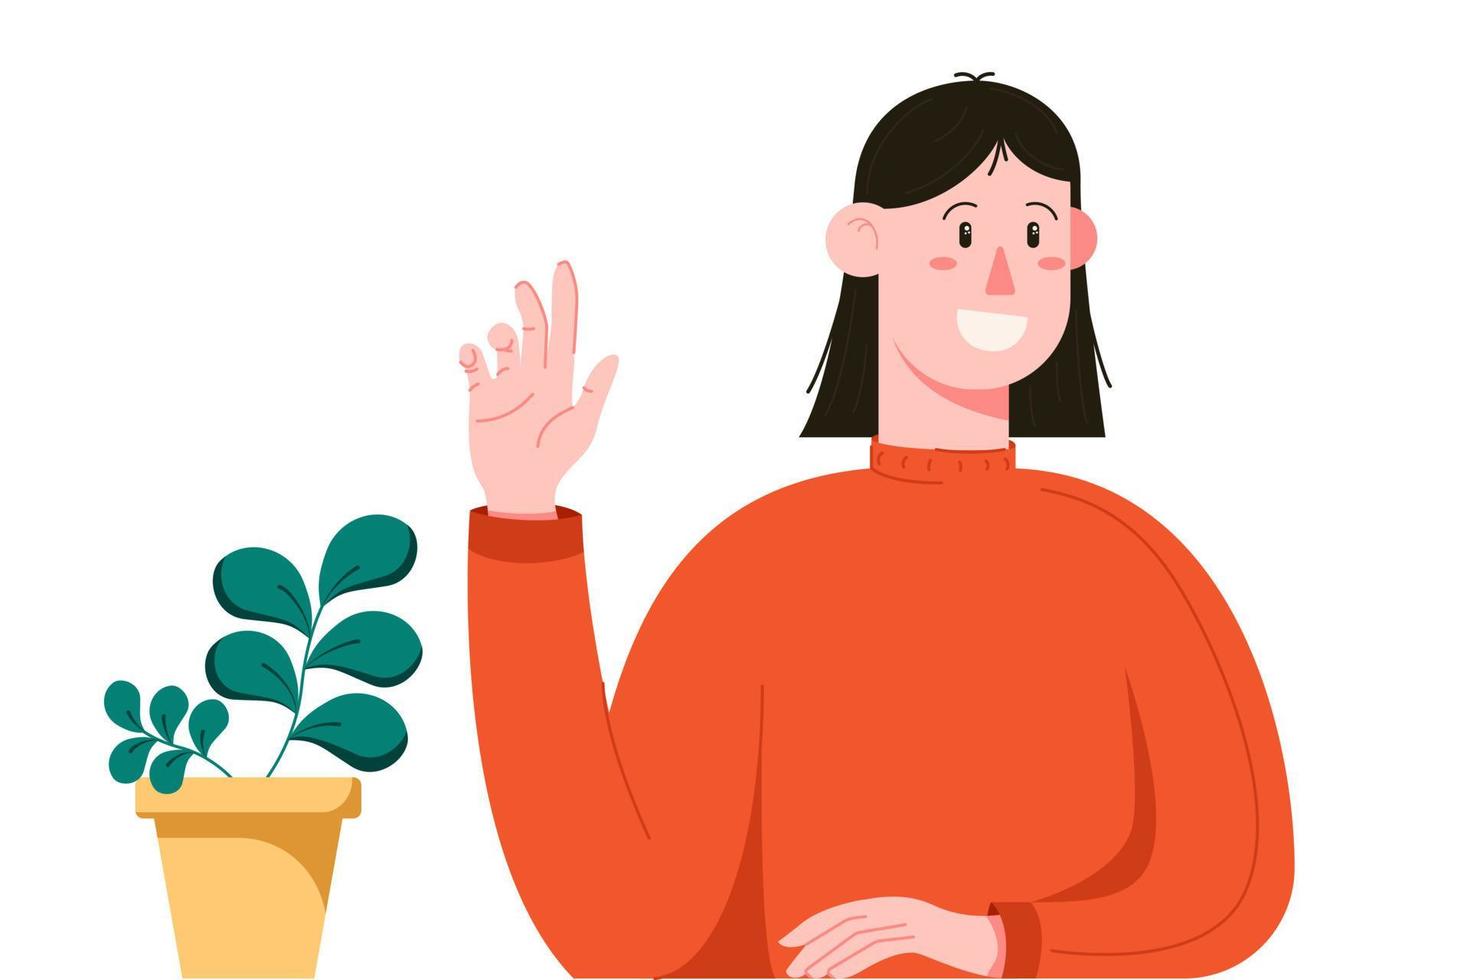 vrouwelijk personage zwaait met haar hand om hallo te zeggen tegen haar vrienden. jonge vrouw met een plant in een vlakke stijl. vector